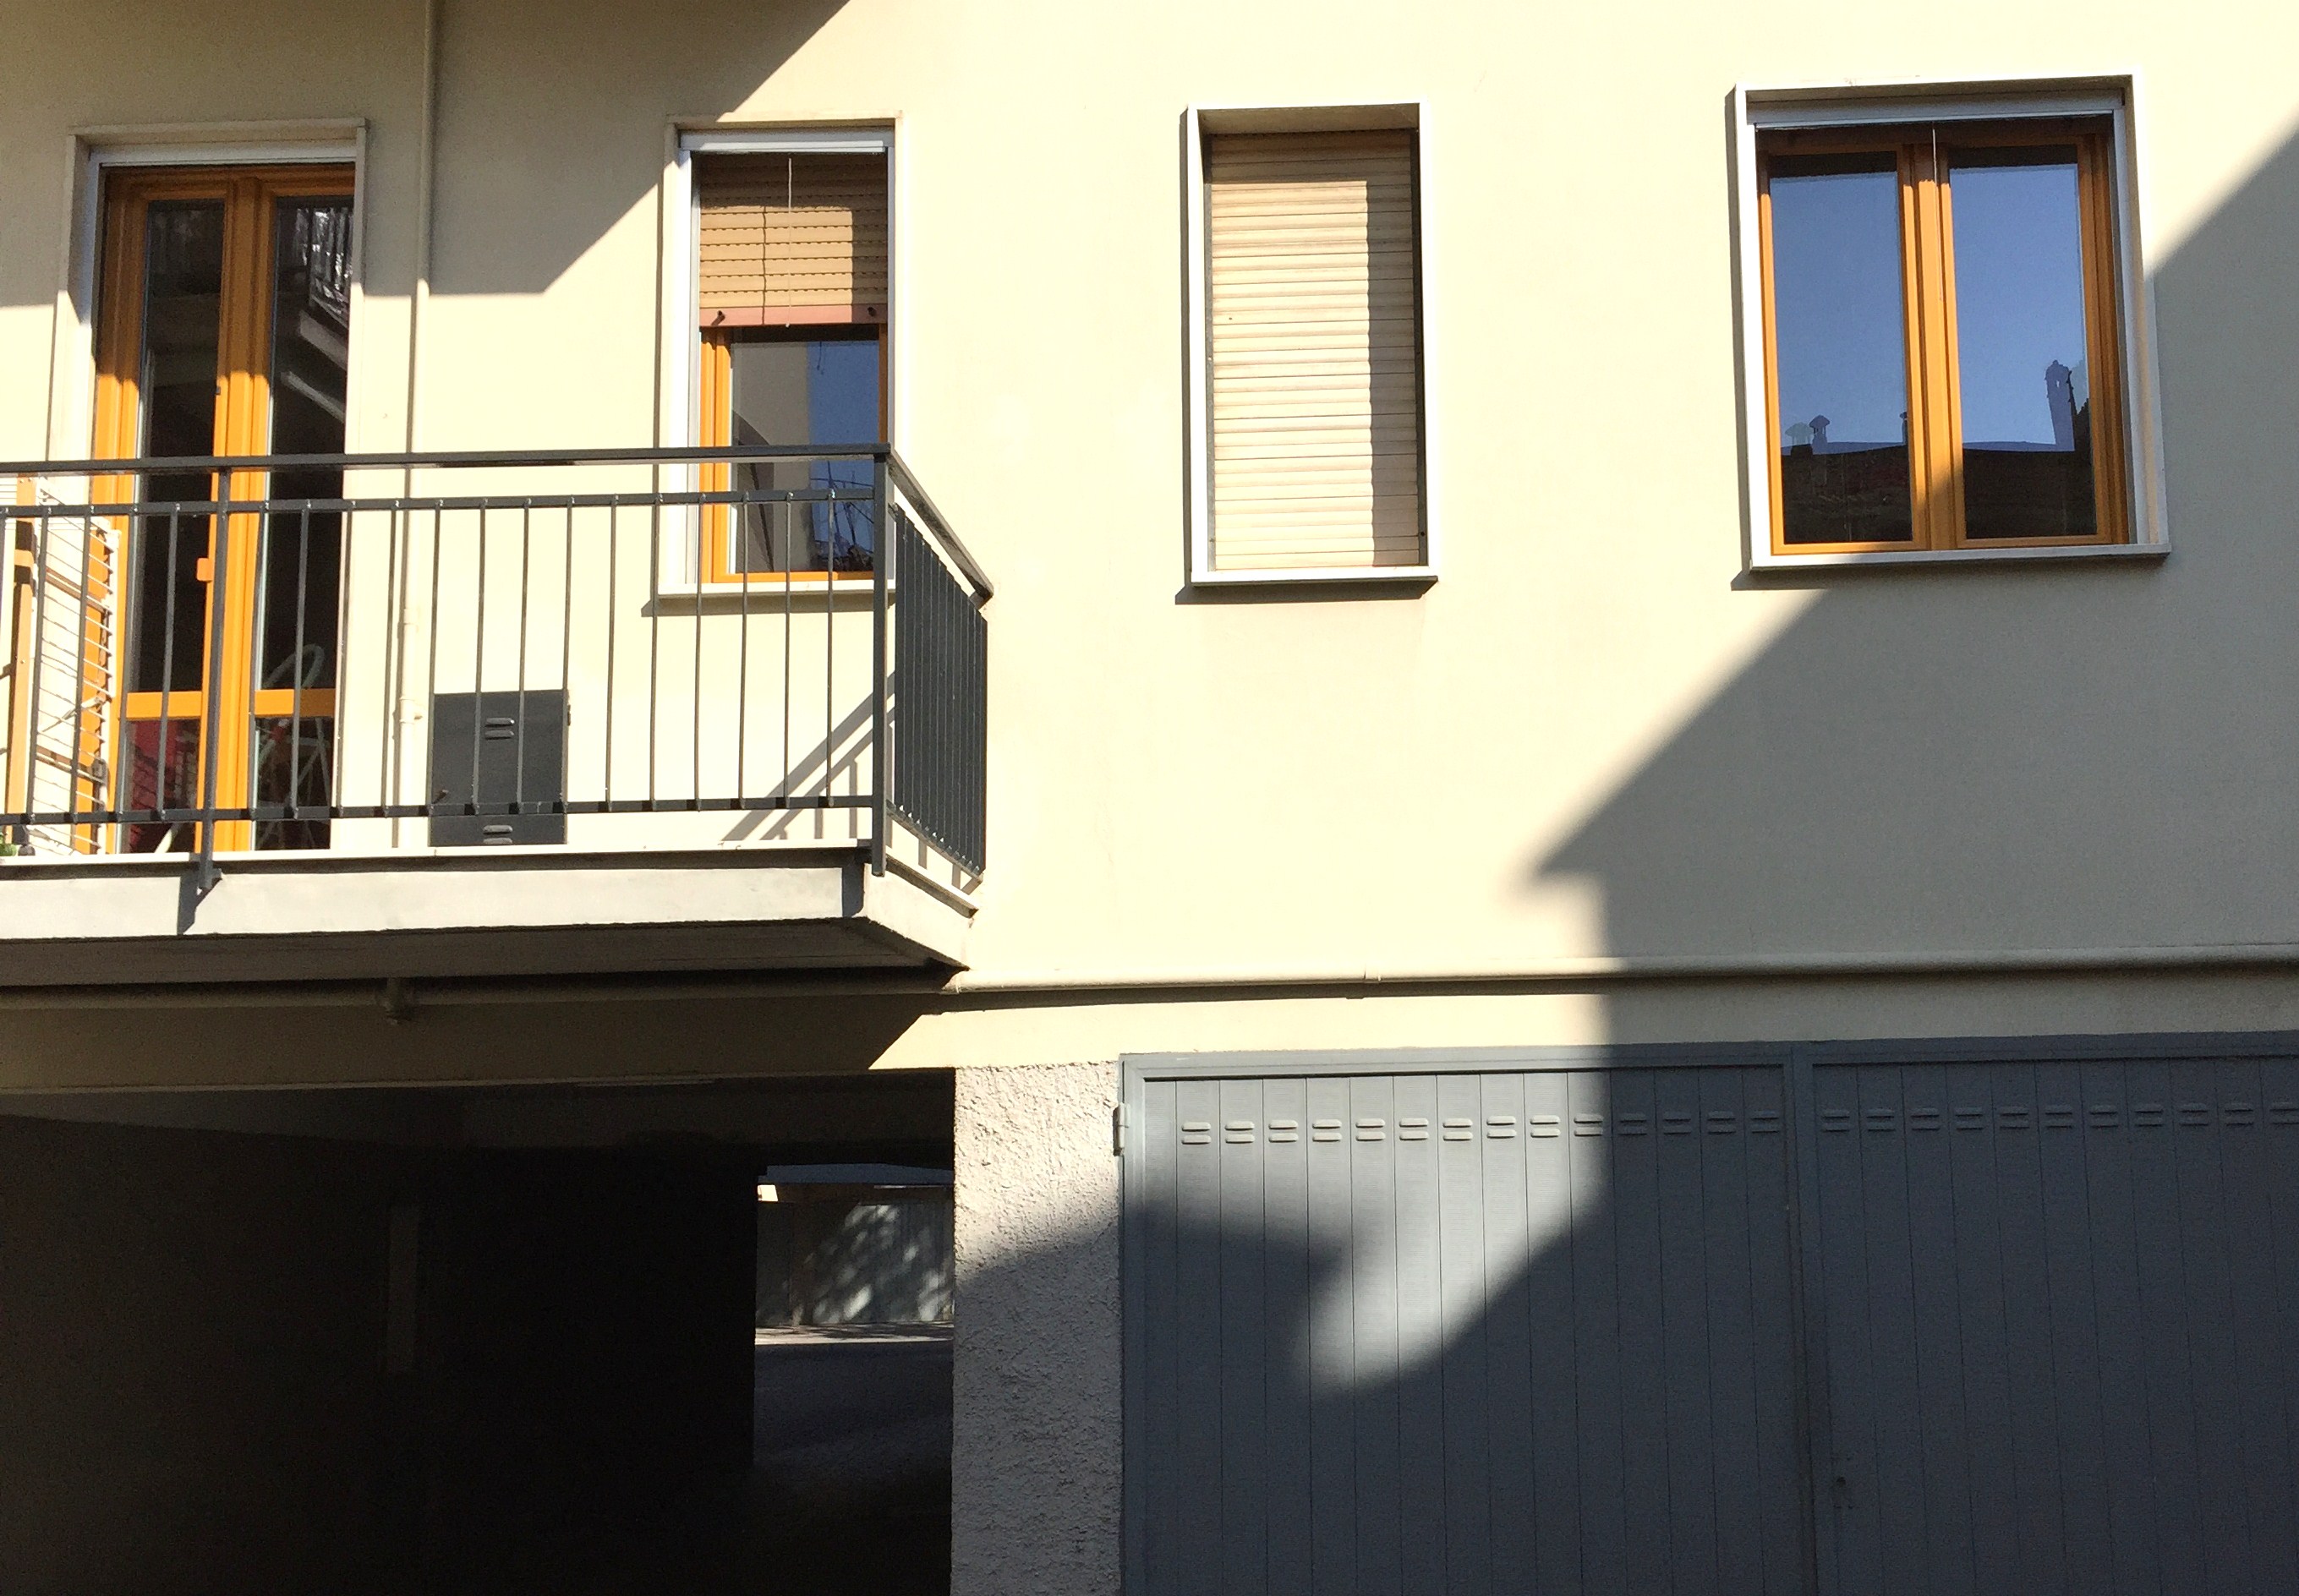 Sostituzione serramenti in PVC bicolore , abitazione a Cremona.